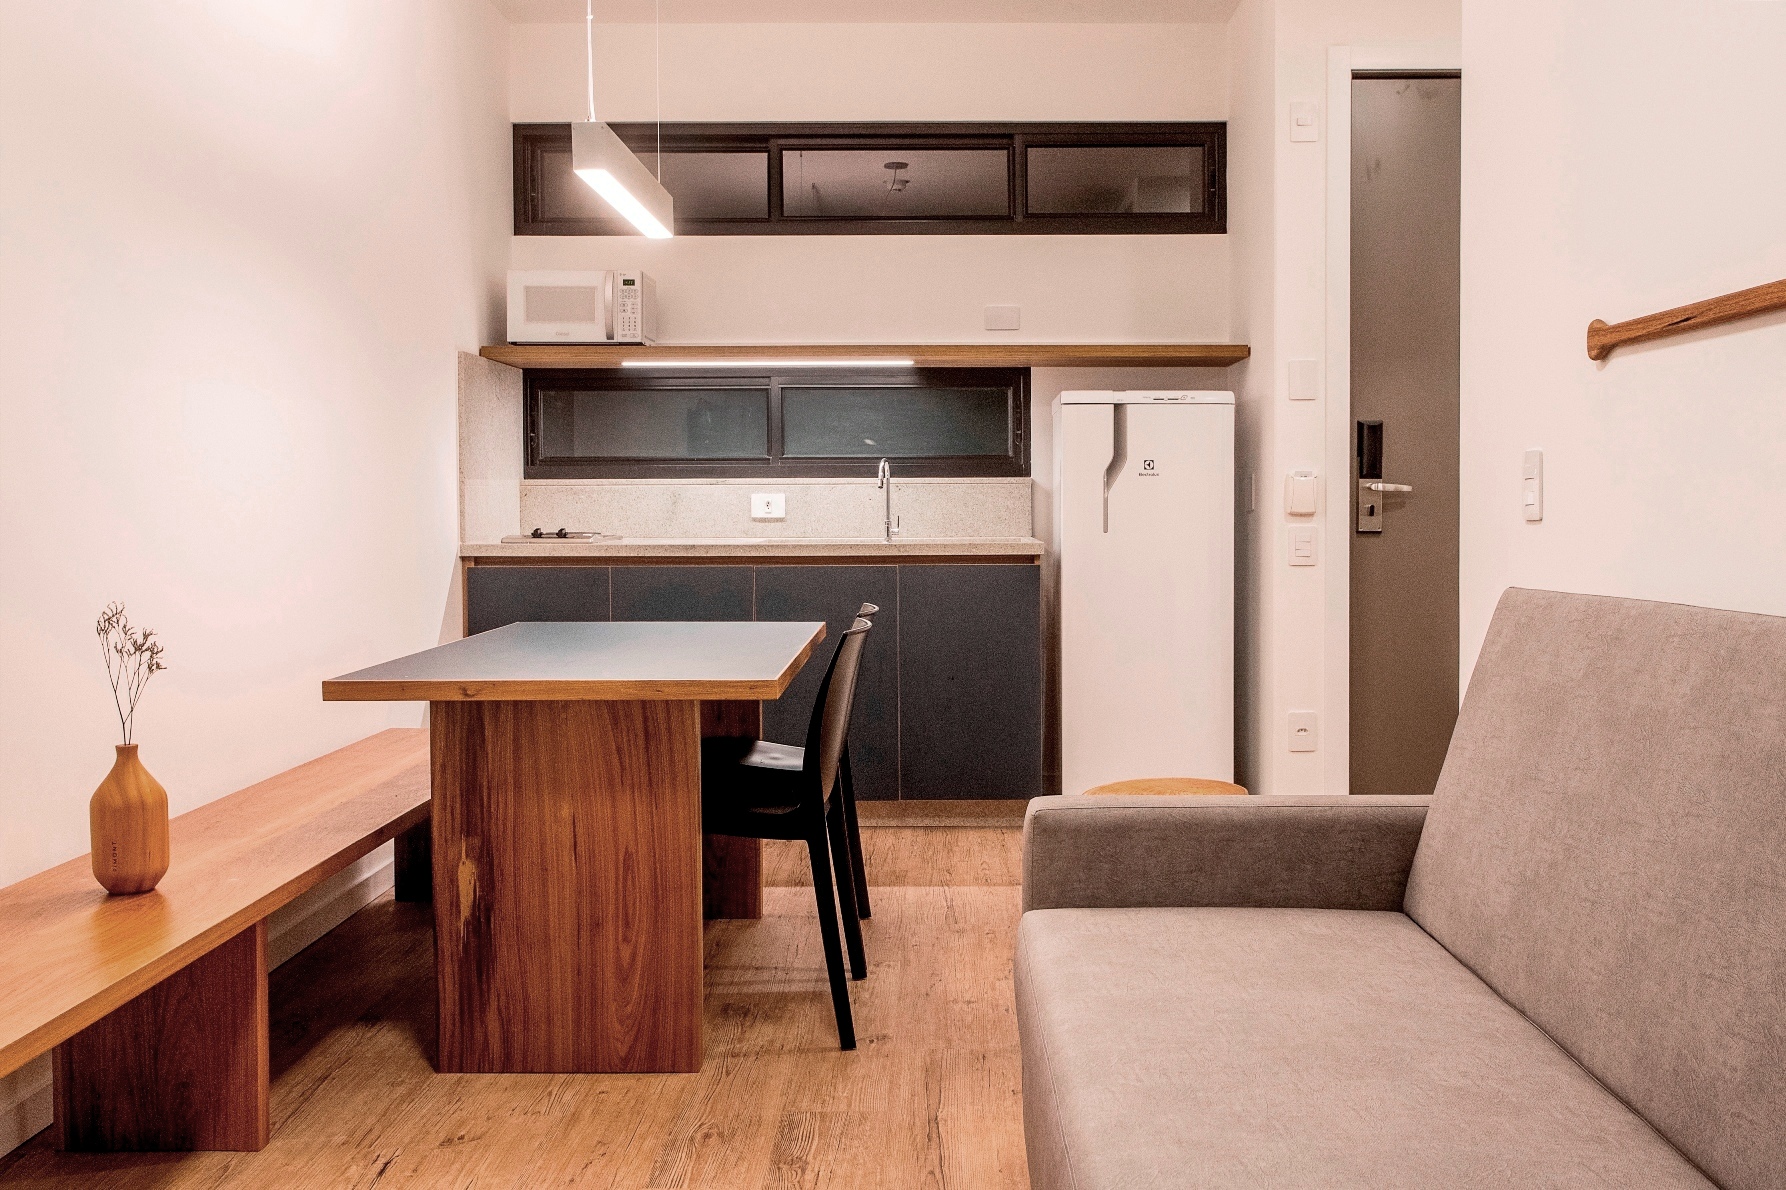 Os apartamentos têm plantas flexíveis, com estrutura modular, para atender a mudança no perfil das famílias (Foto: Fernando Willadino)